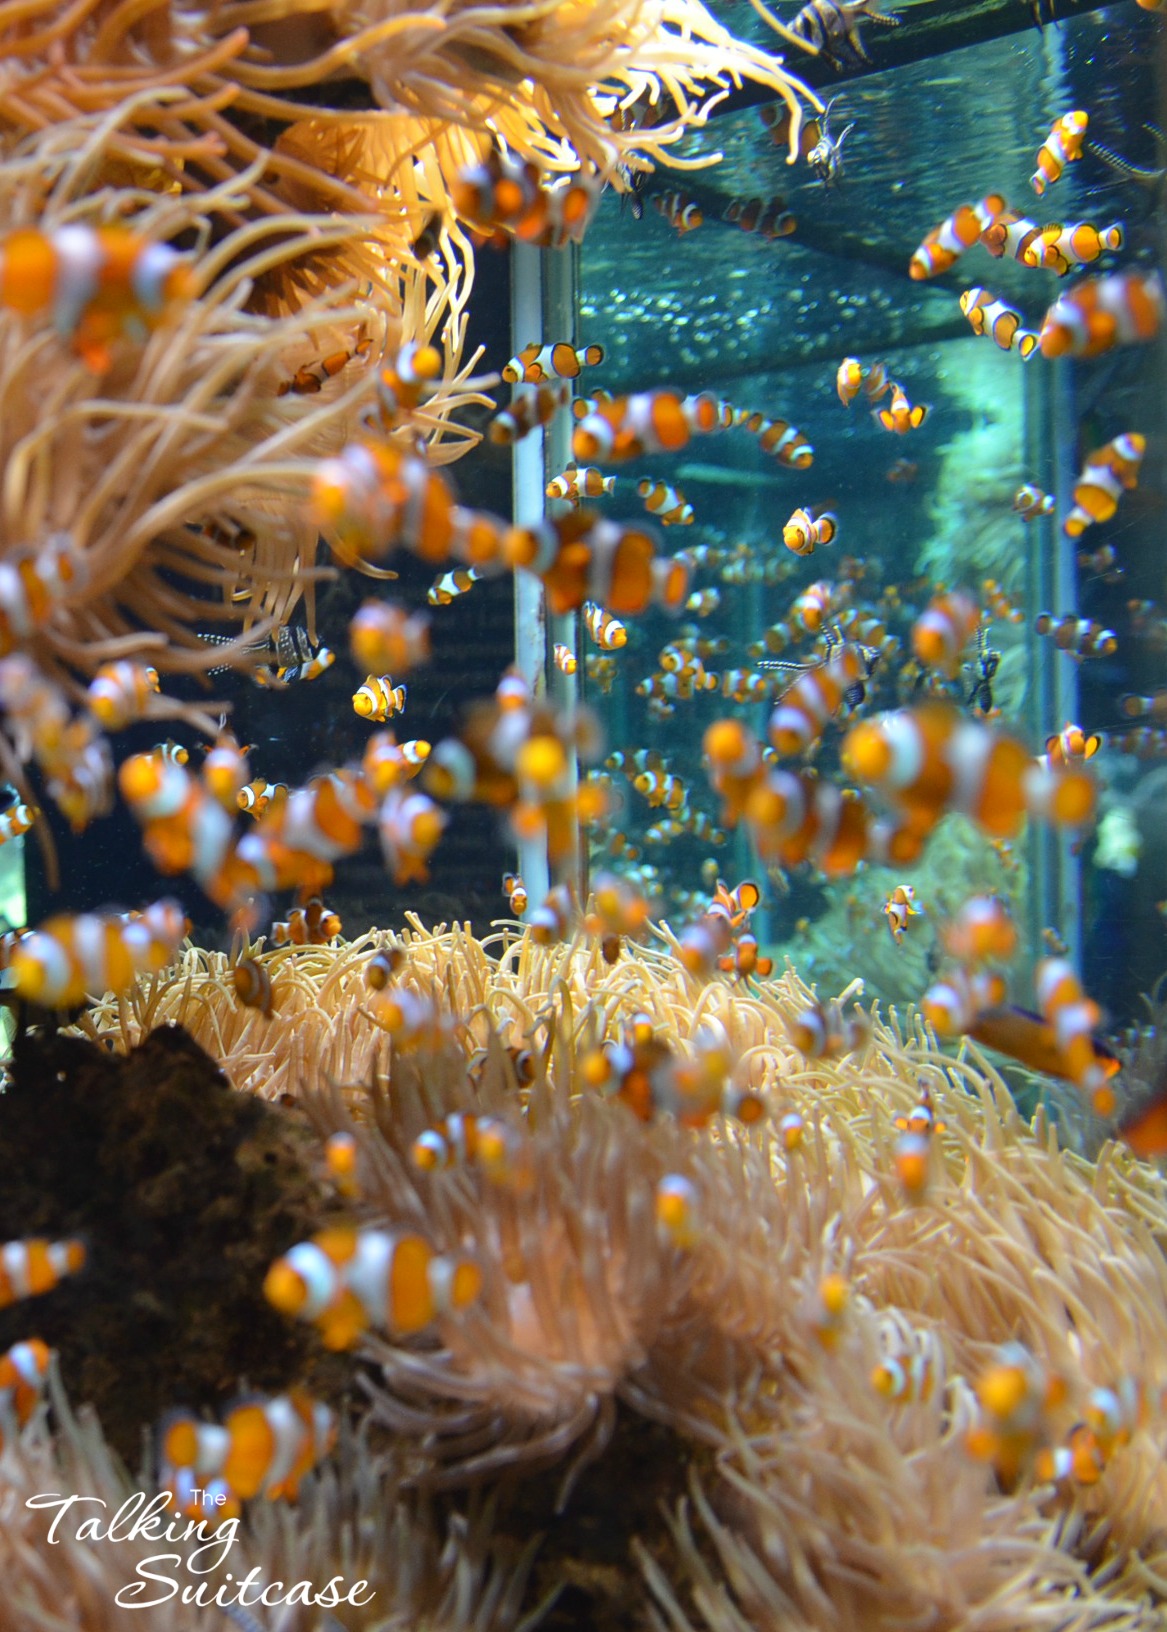 Monaco Aquarium1167 x 1632